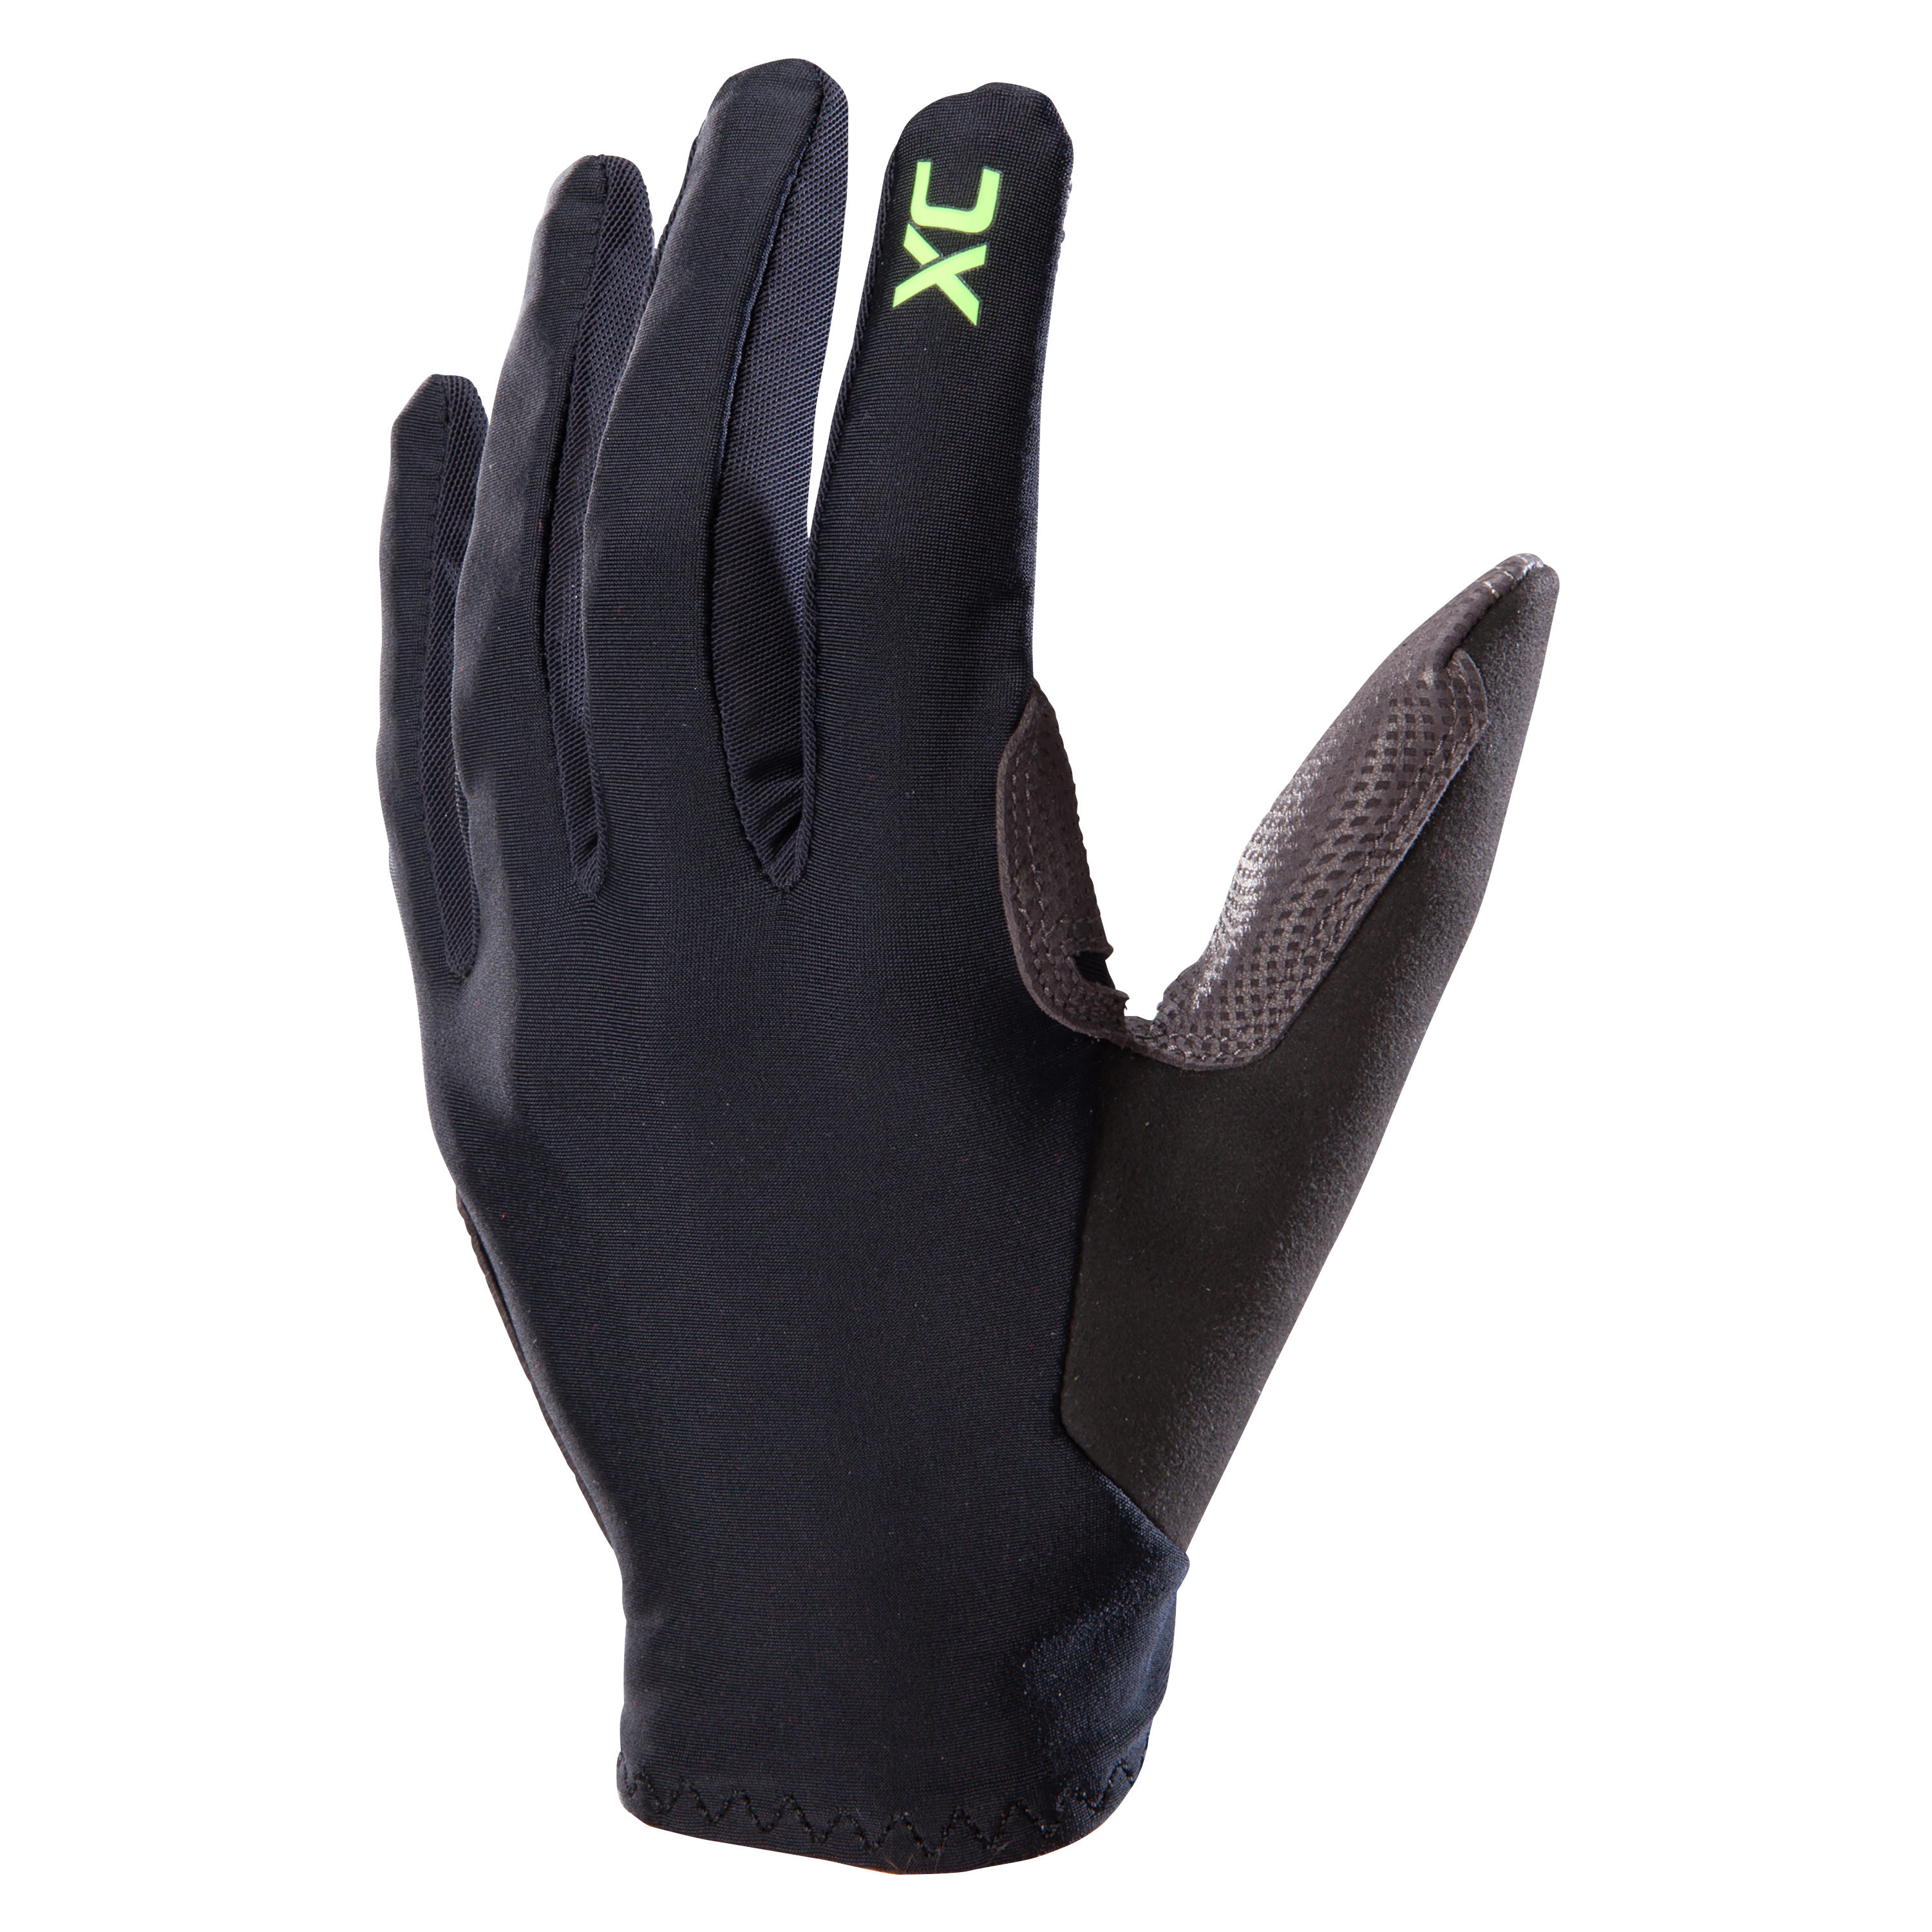 Light XC Mountain Bike Gloves - Black 1/4